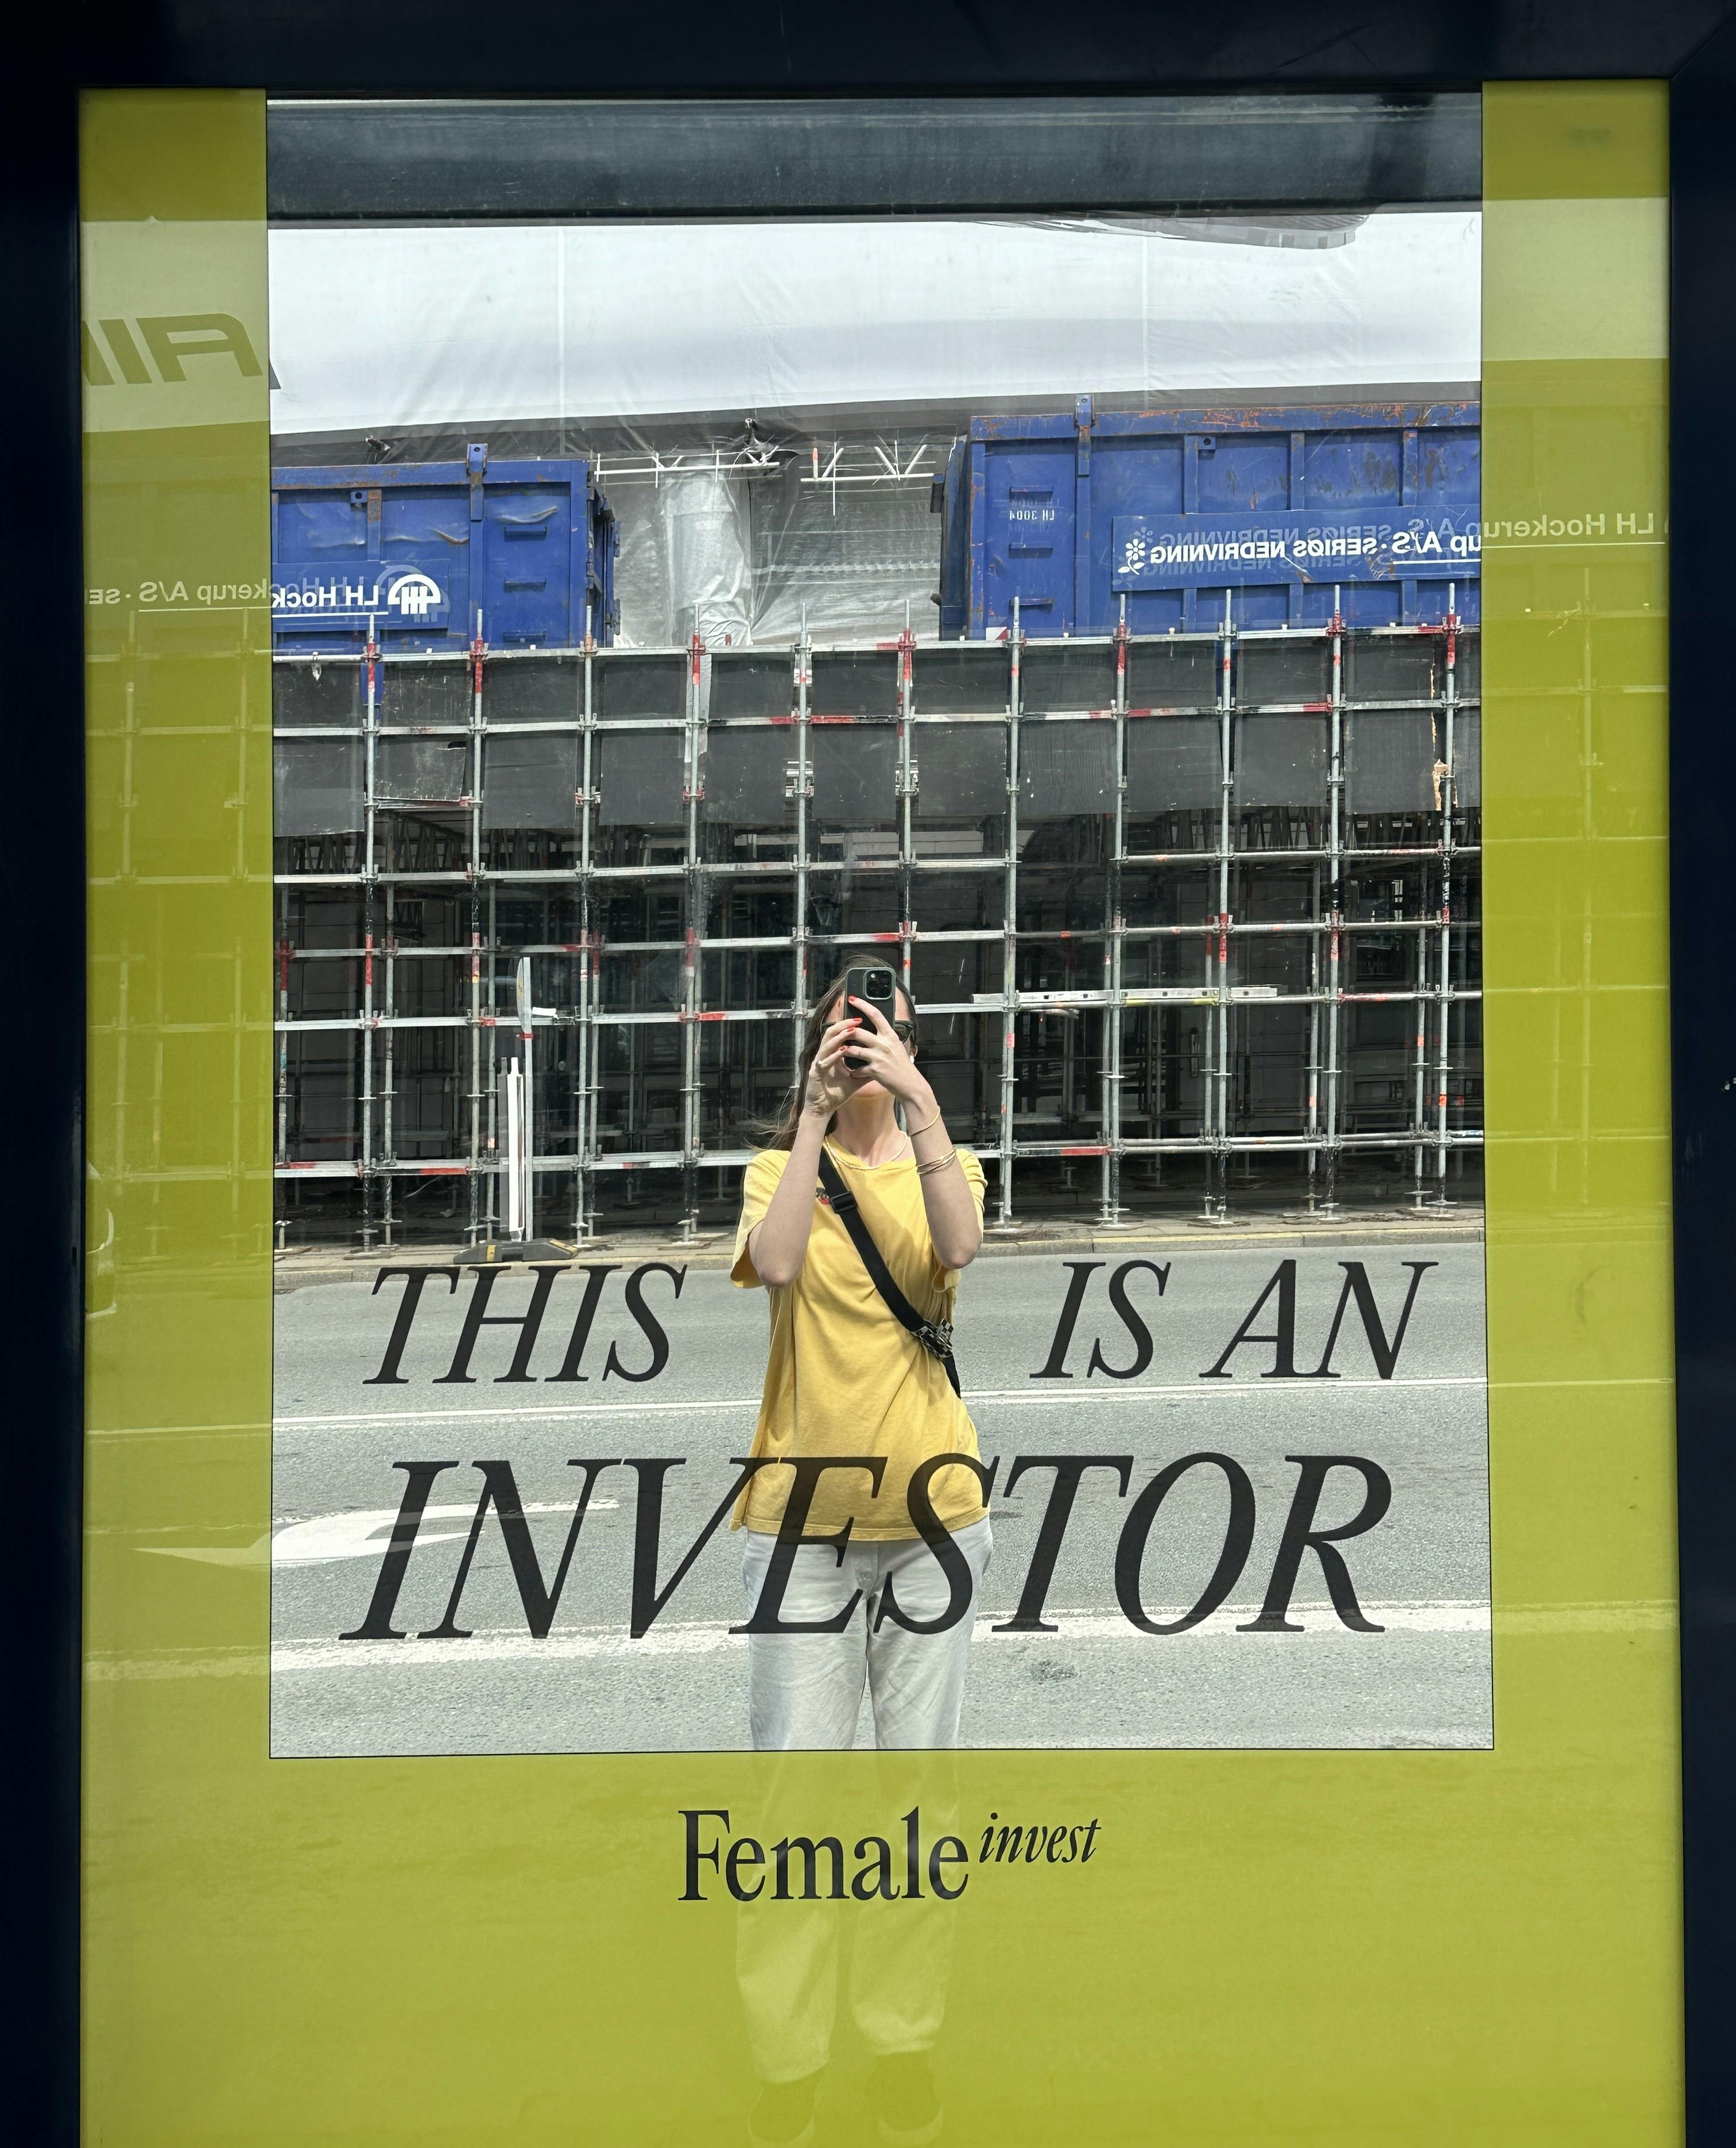 Female Invest